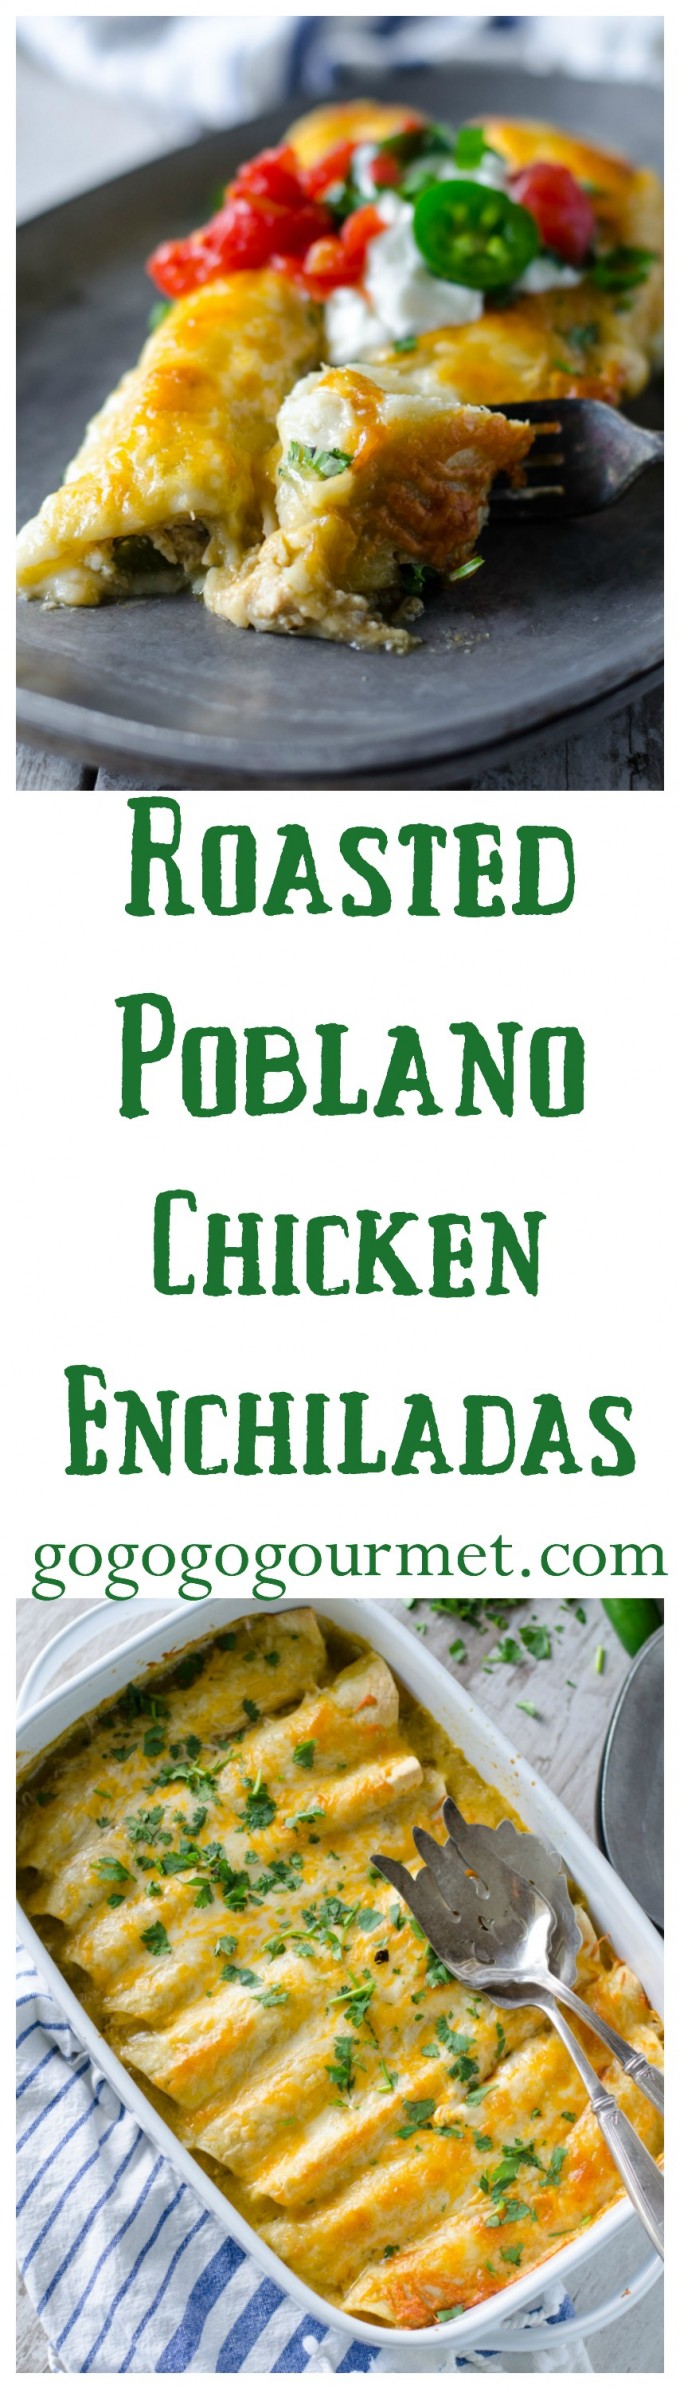 Roasted Poblano Chicken Enchiladas Go Go Go Gourmet